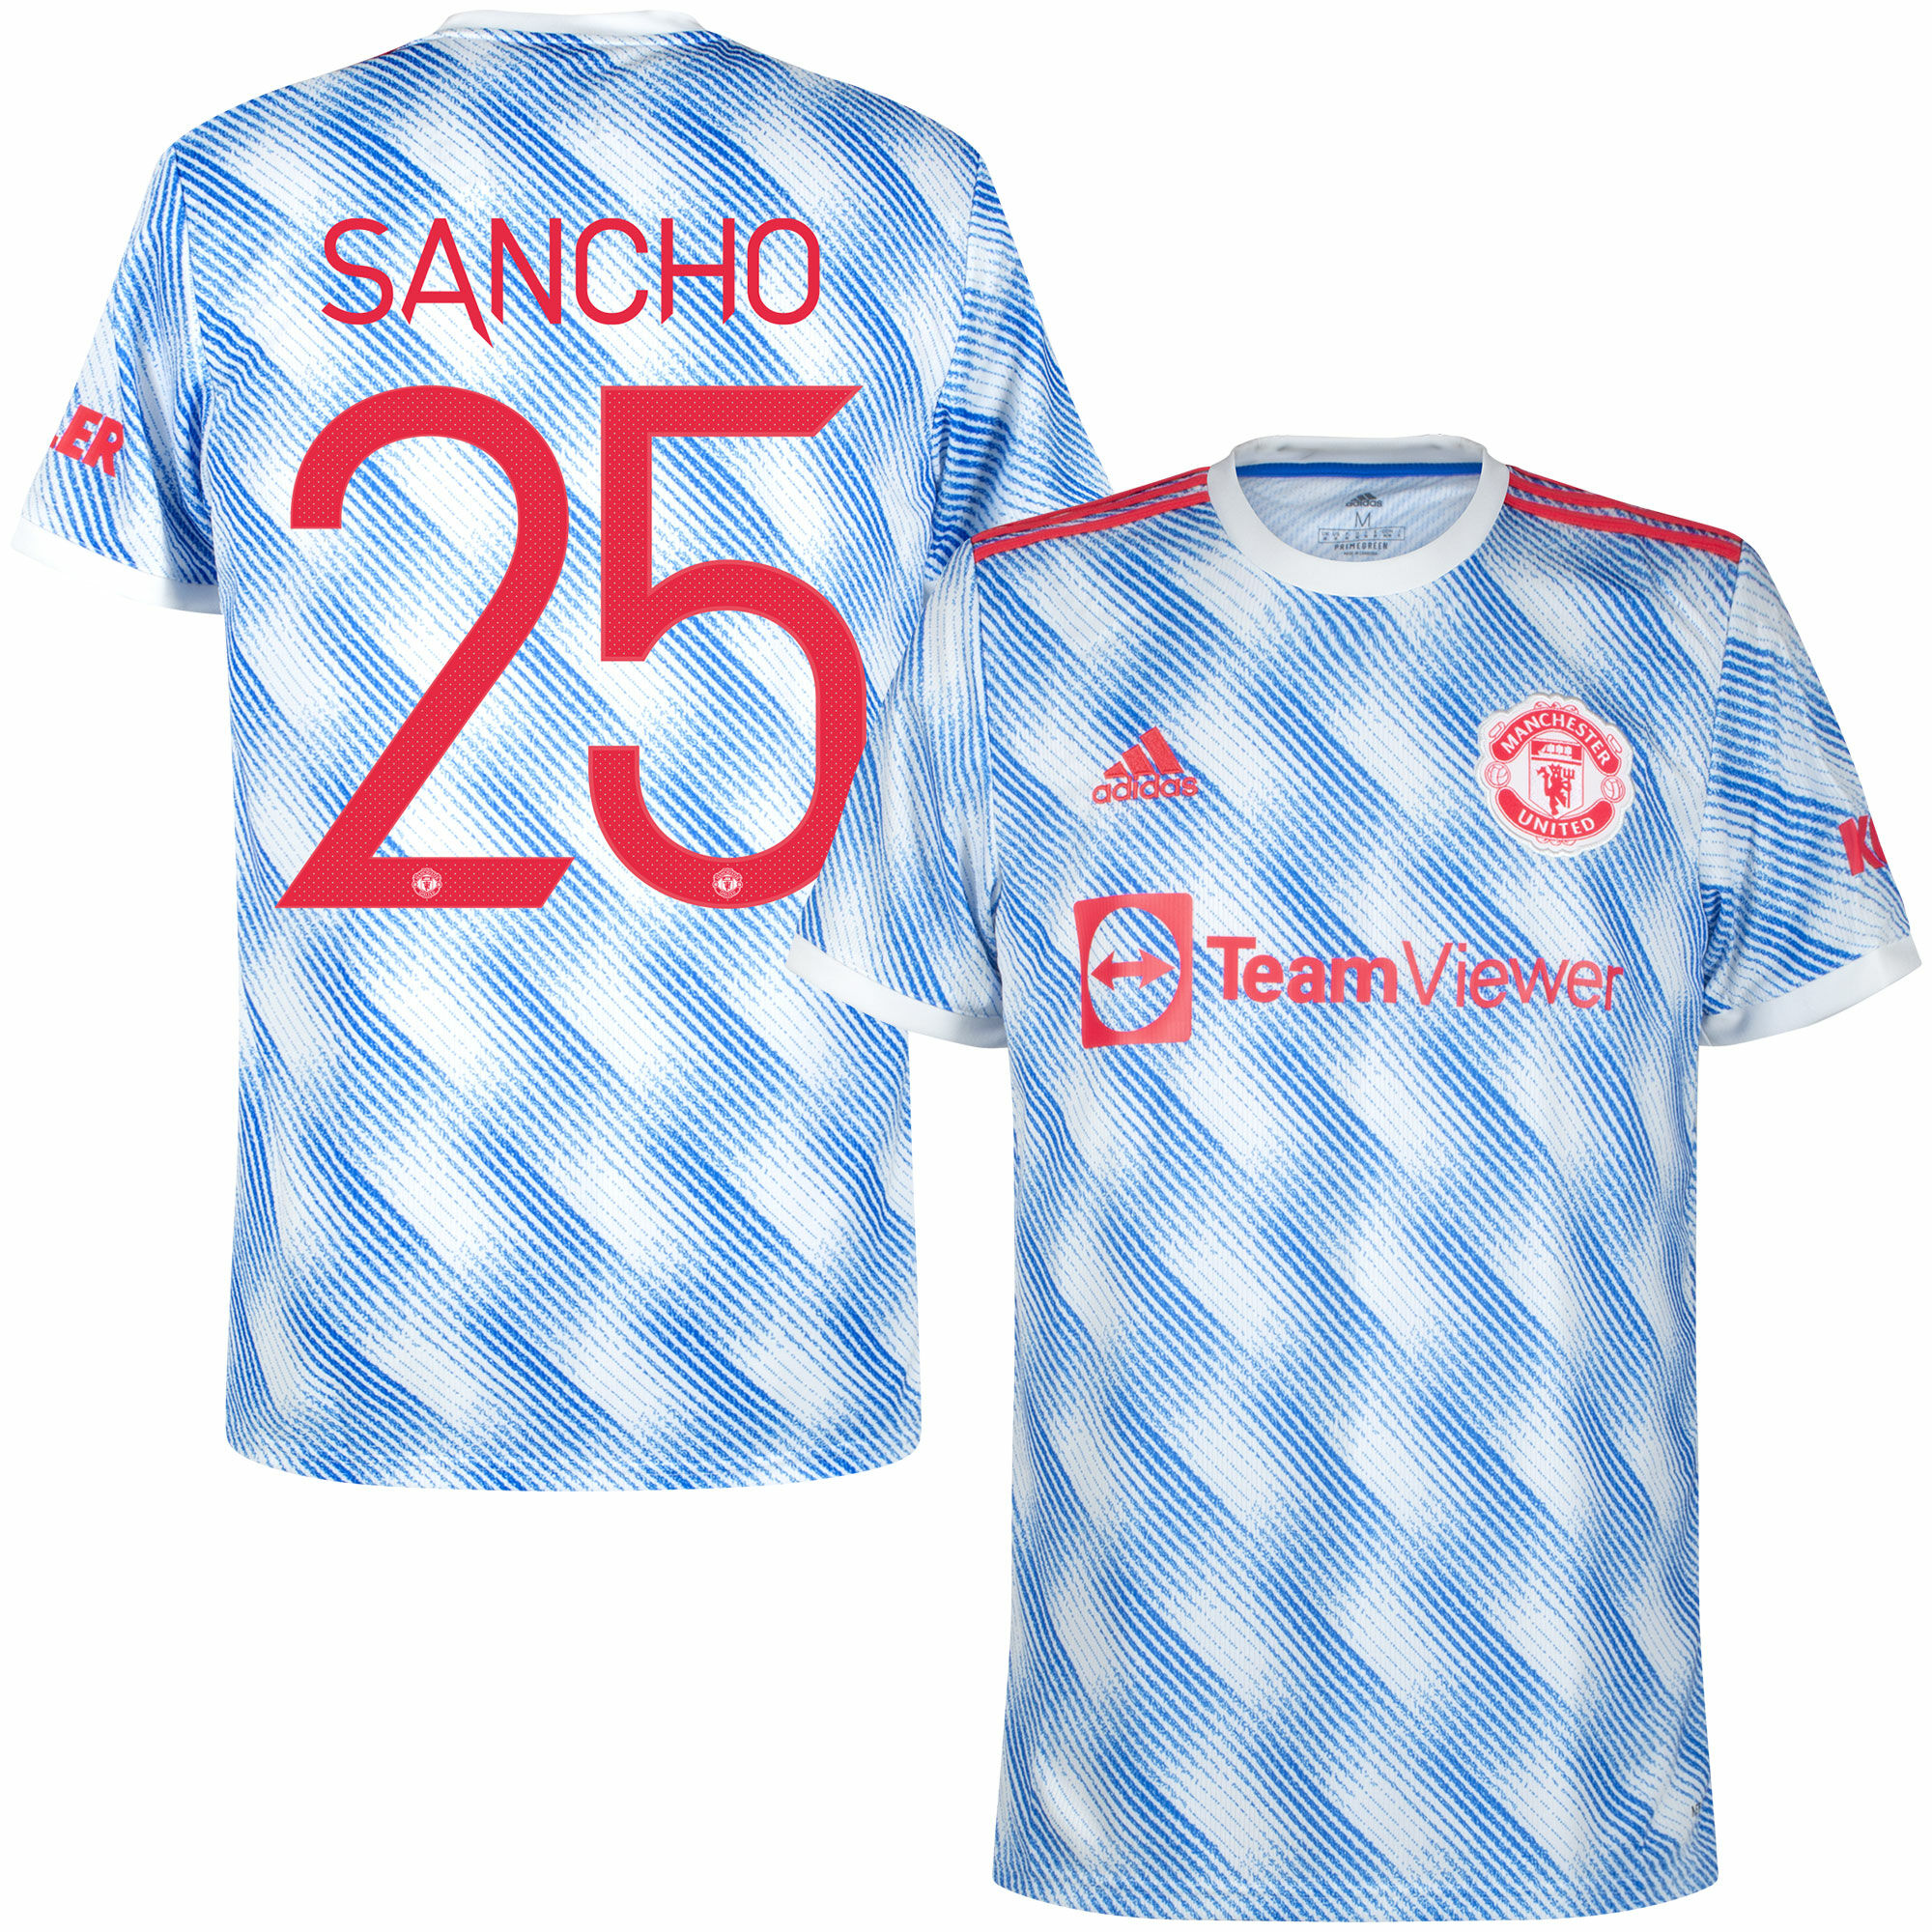 Manchester United - Dres fotbalový - oficiální potisk, sezóna 2021/22, bílý, Jadon Sancho, číslo 25, venkovní